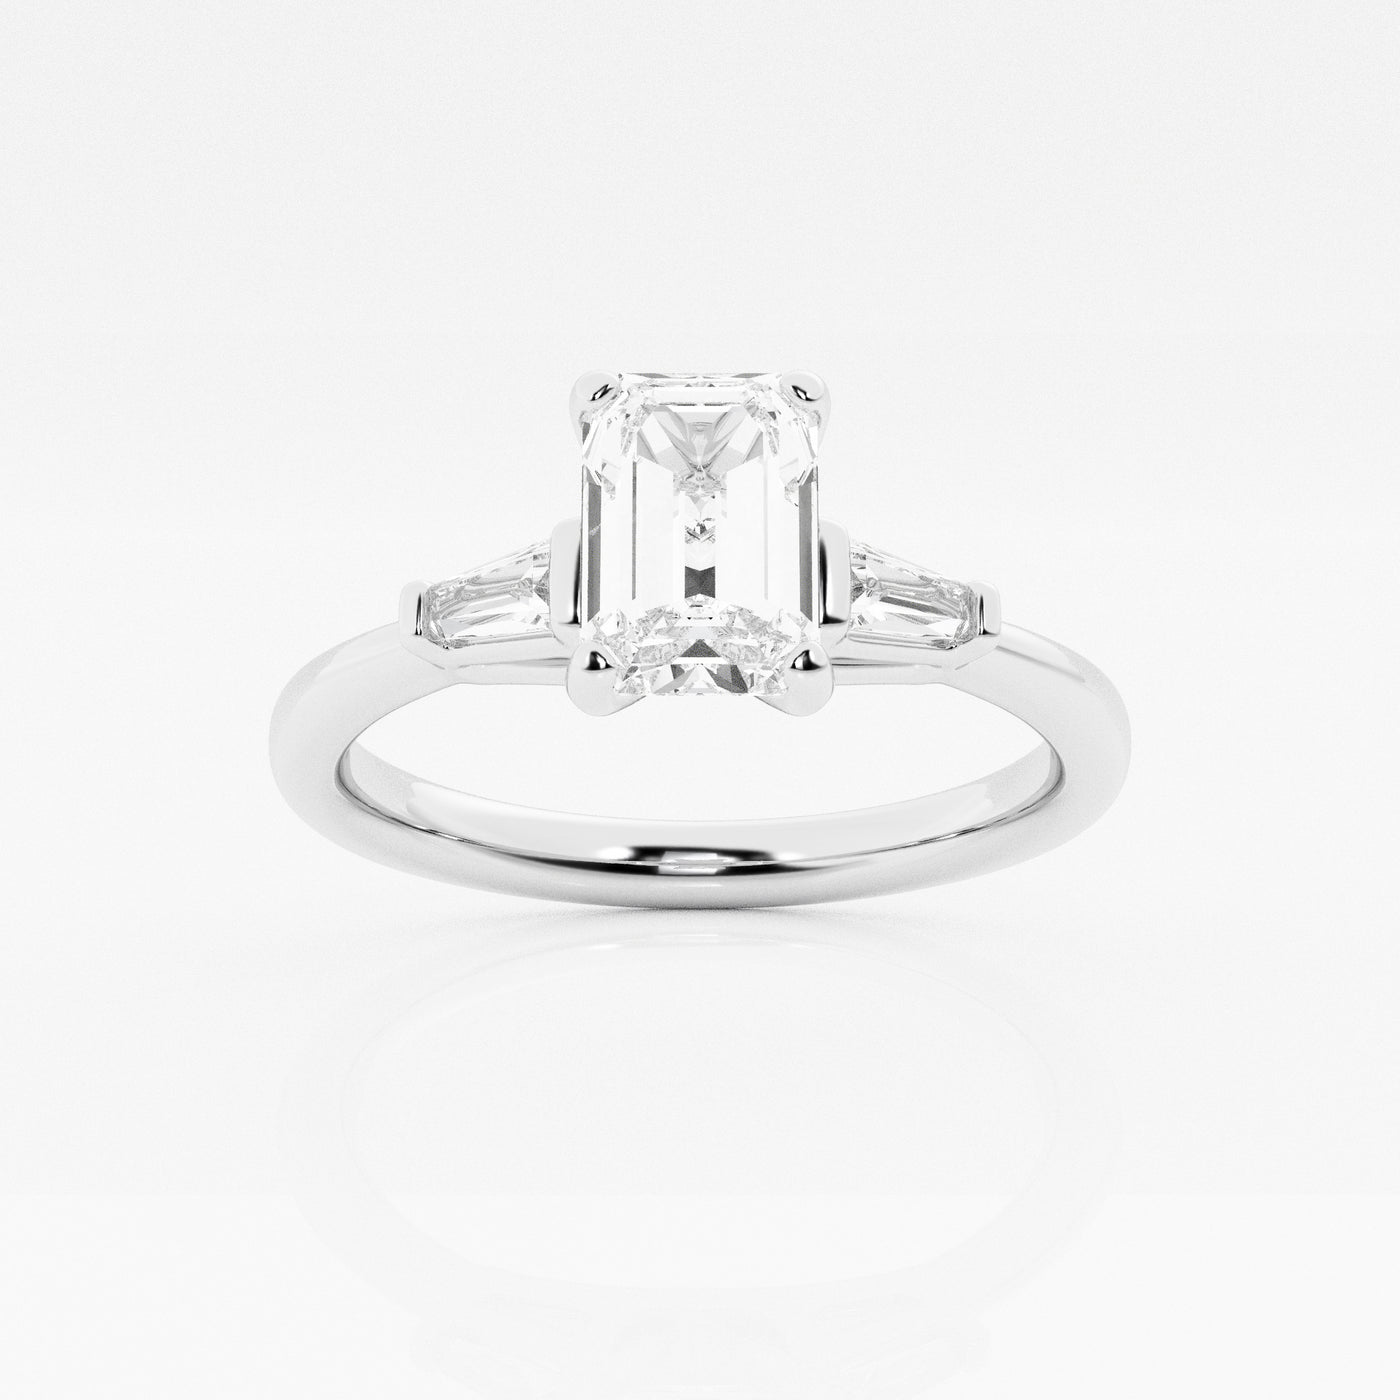 _main_image@SKU:LGR0617X2E100SOGW4~#carat_1.14#diamond-quality_fg,-vs2+#metal_18k-white-gold